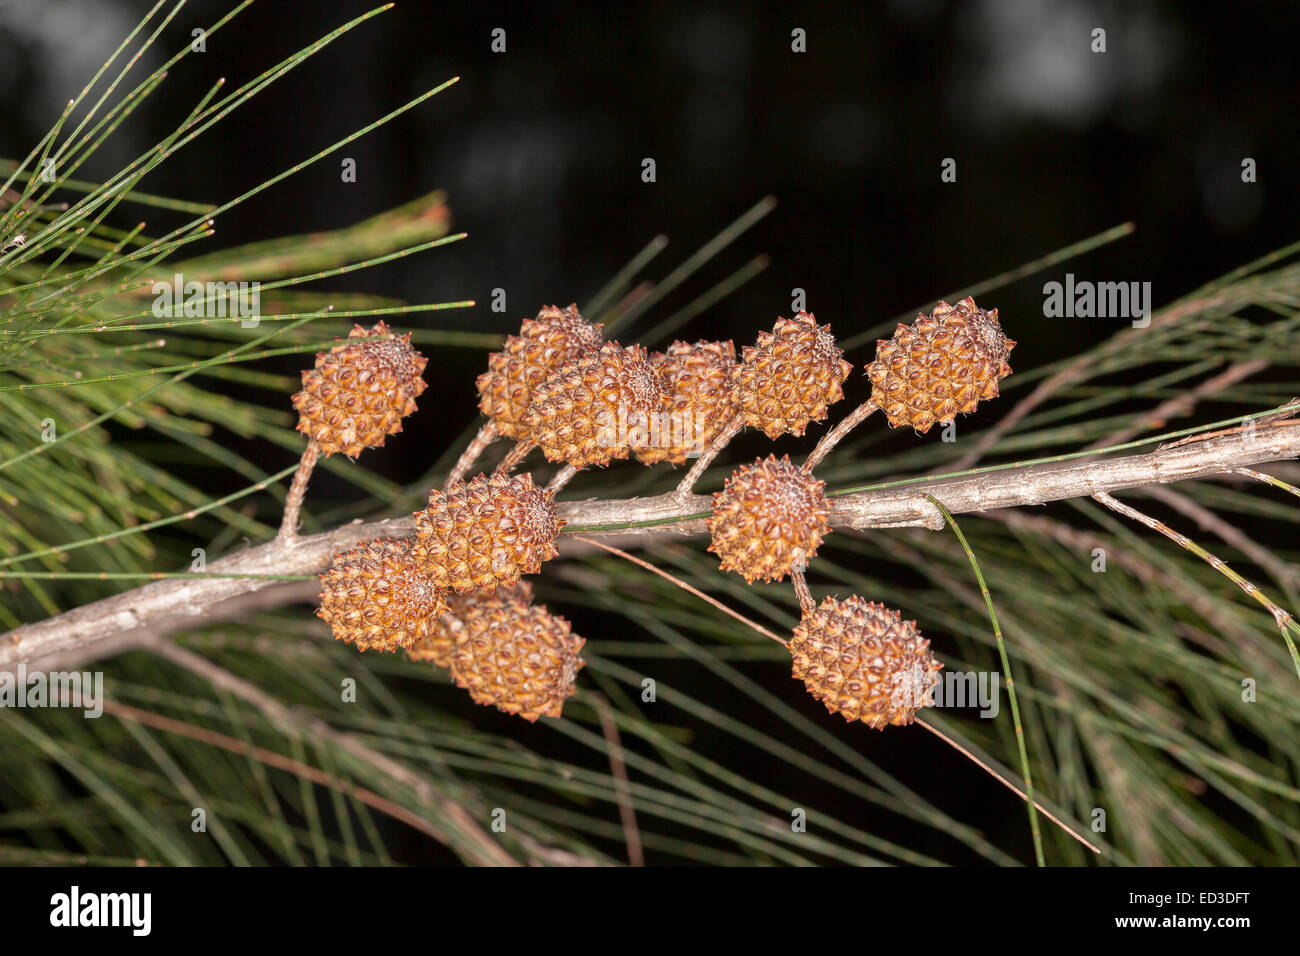 Grappe de cônes à graines brun rougeâtre de Casuarina, elle australiennes indigènes des espèces d'arbres de chêne, sur branche avec feuillage vert gris Banque D'Images